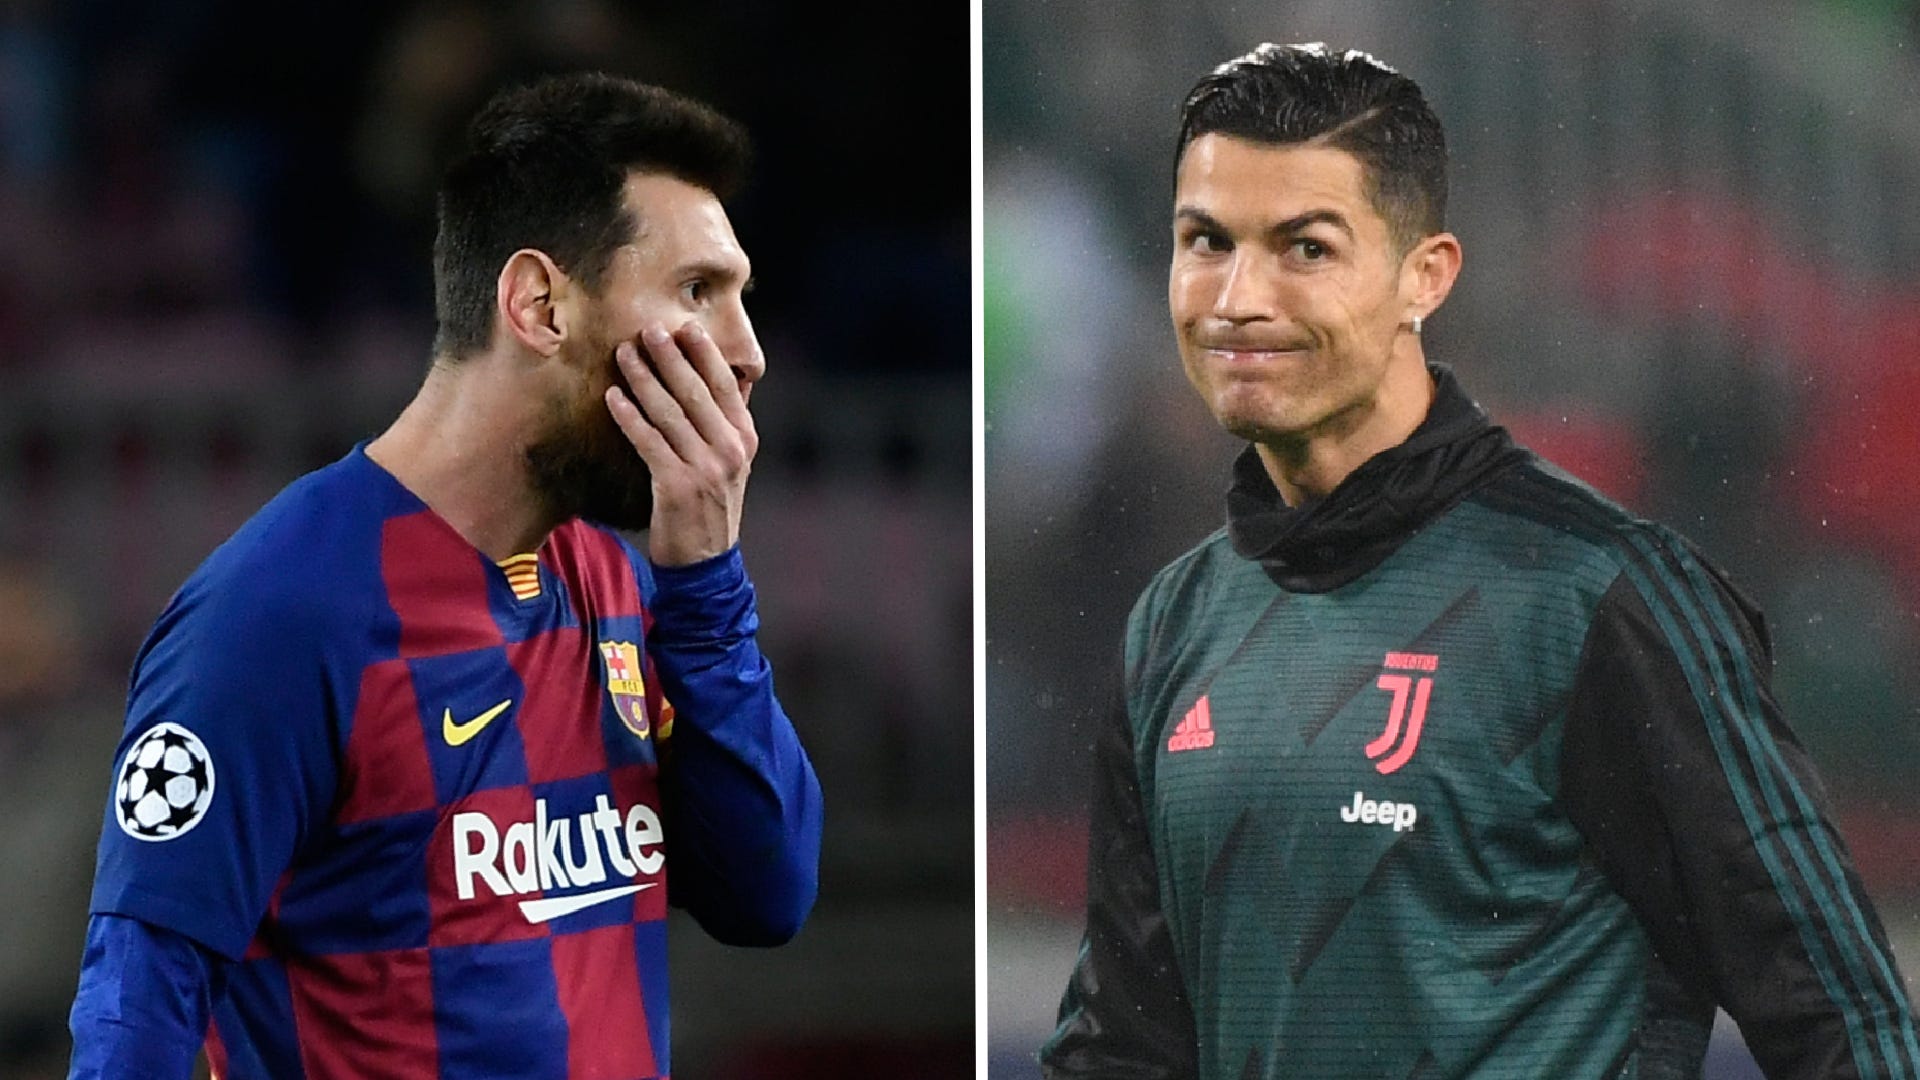 Lionel Messi/Cristiano Ronaldo 2019-20